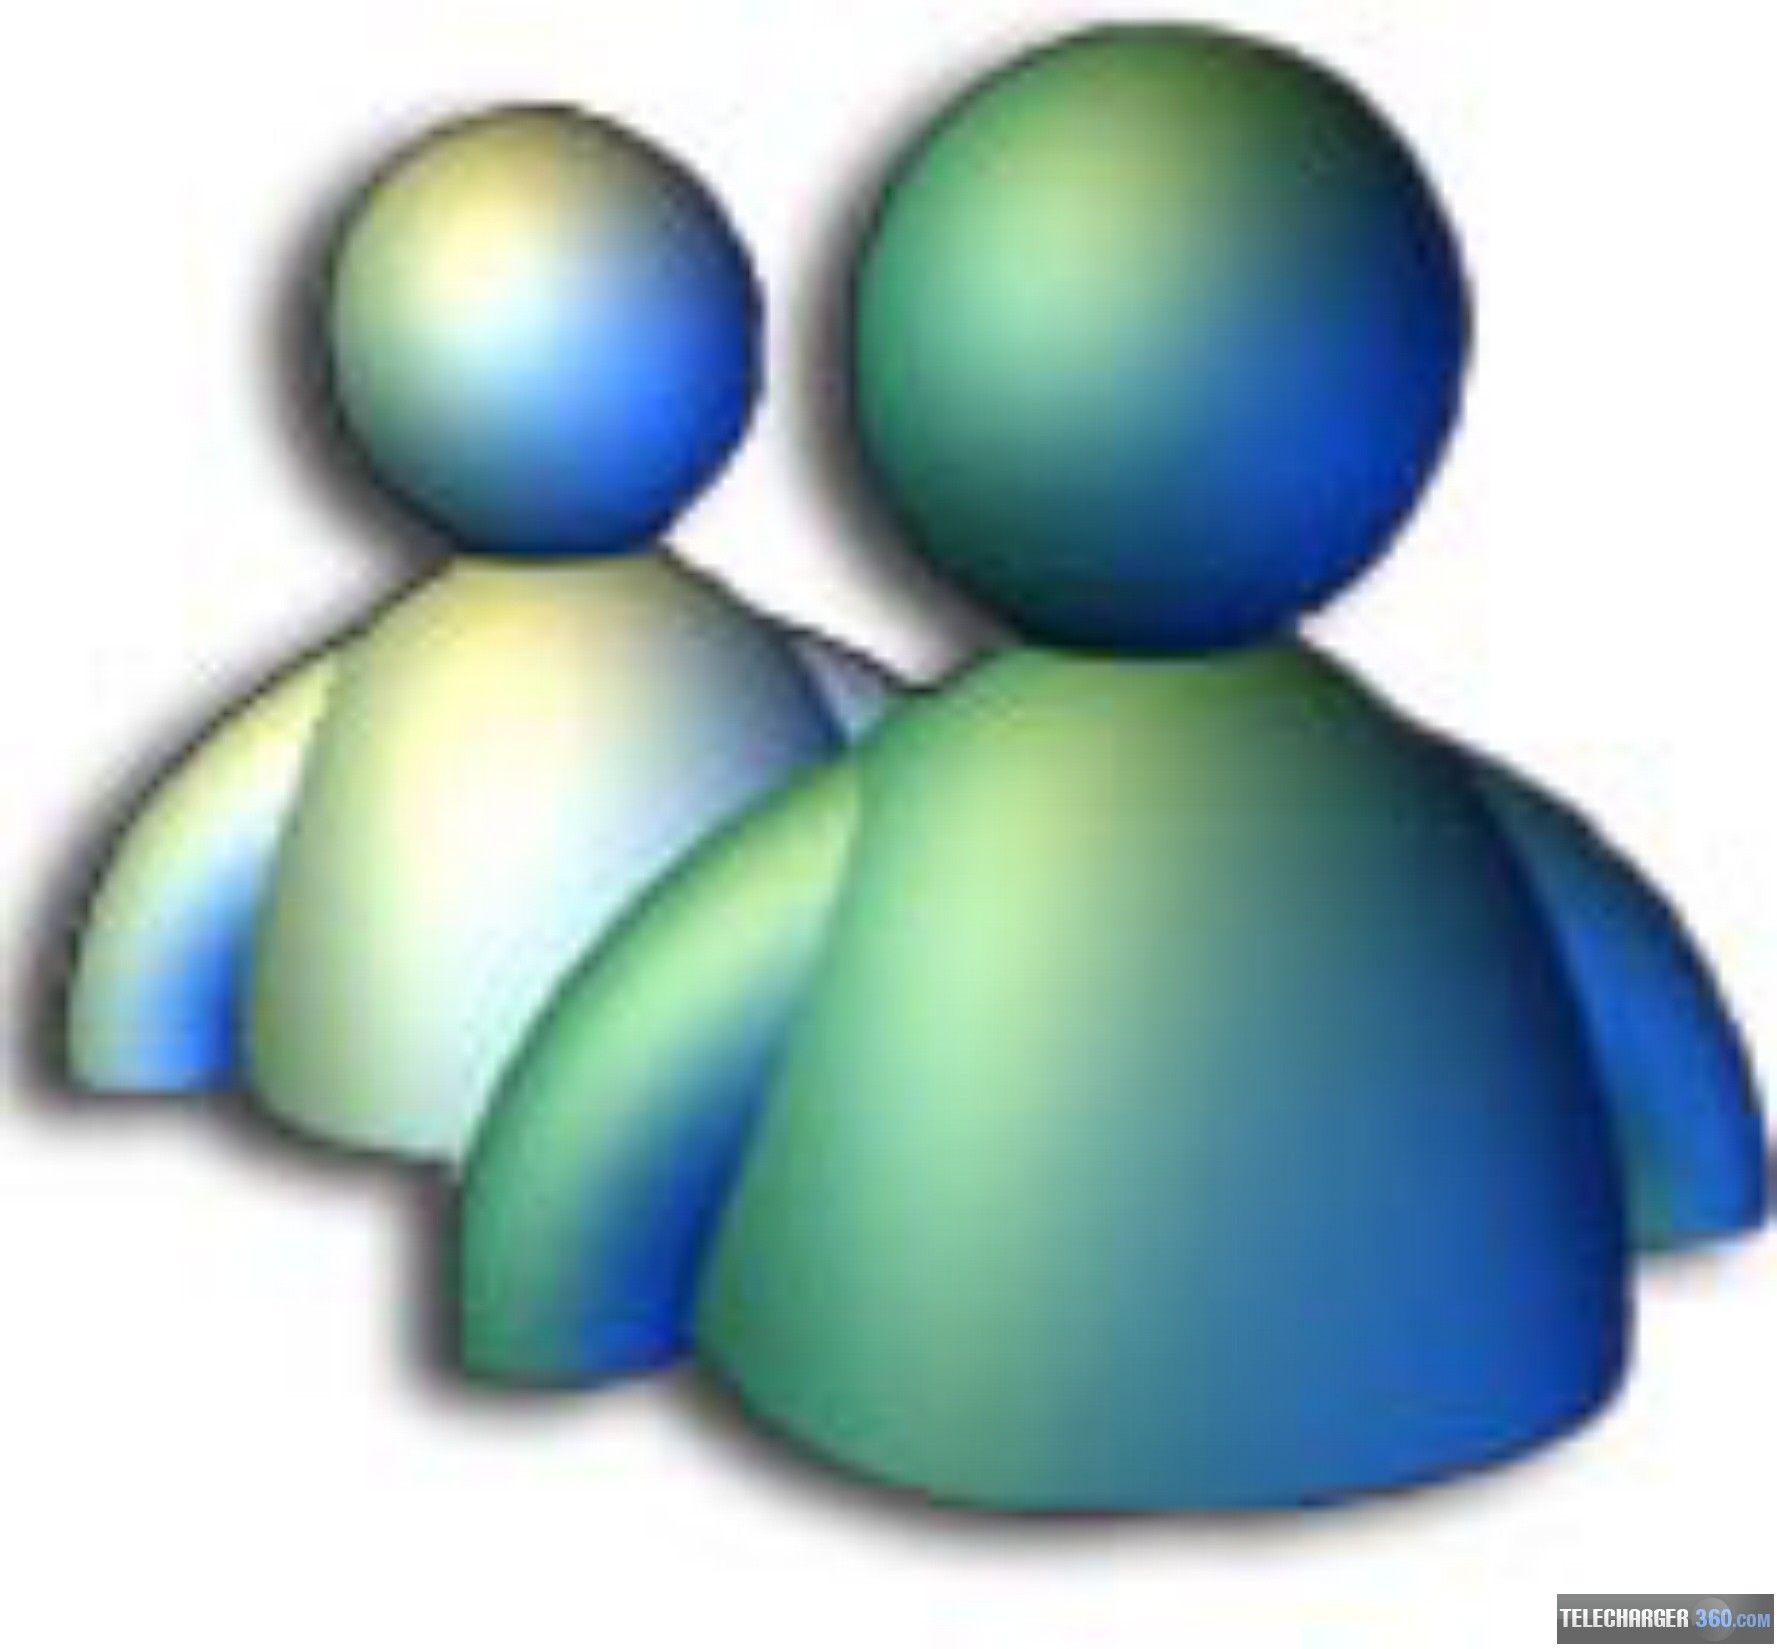 MSN Messenger Official Logo - Windows messenger Logos